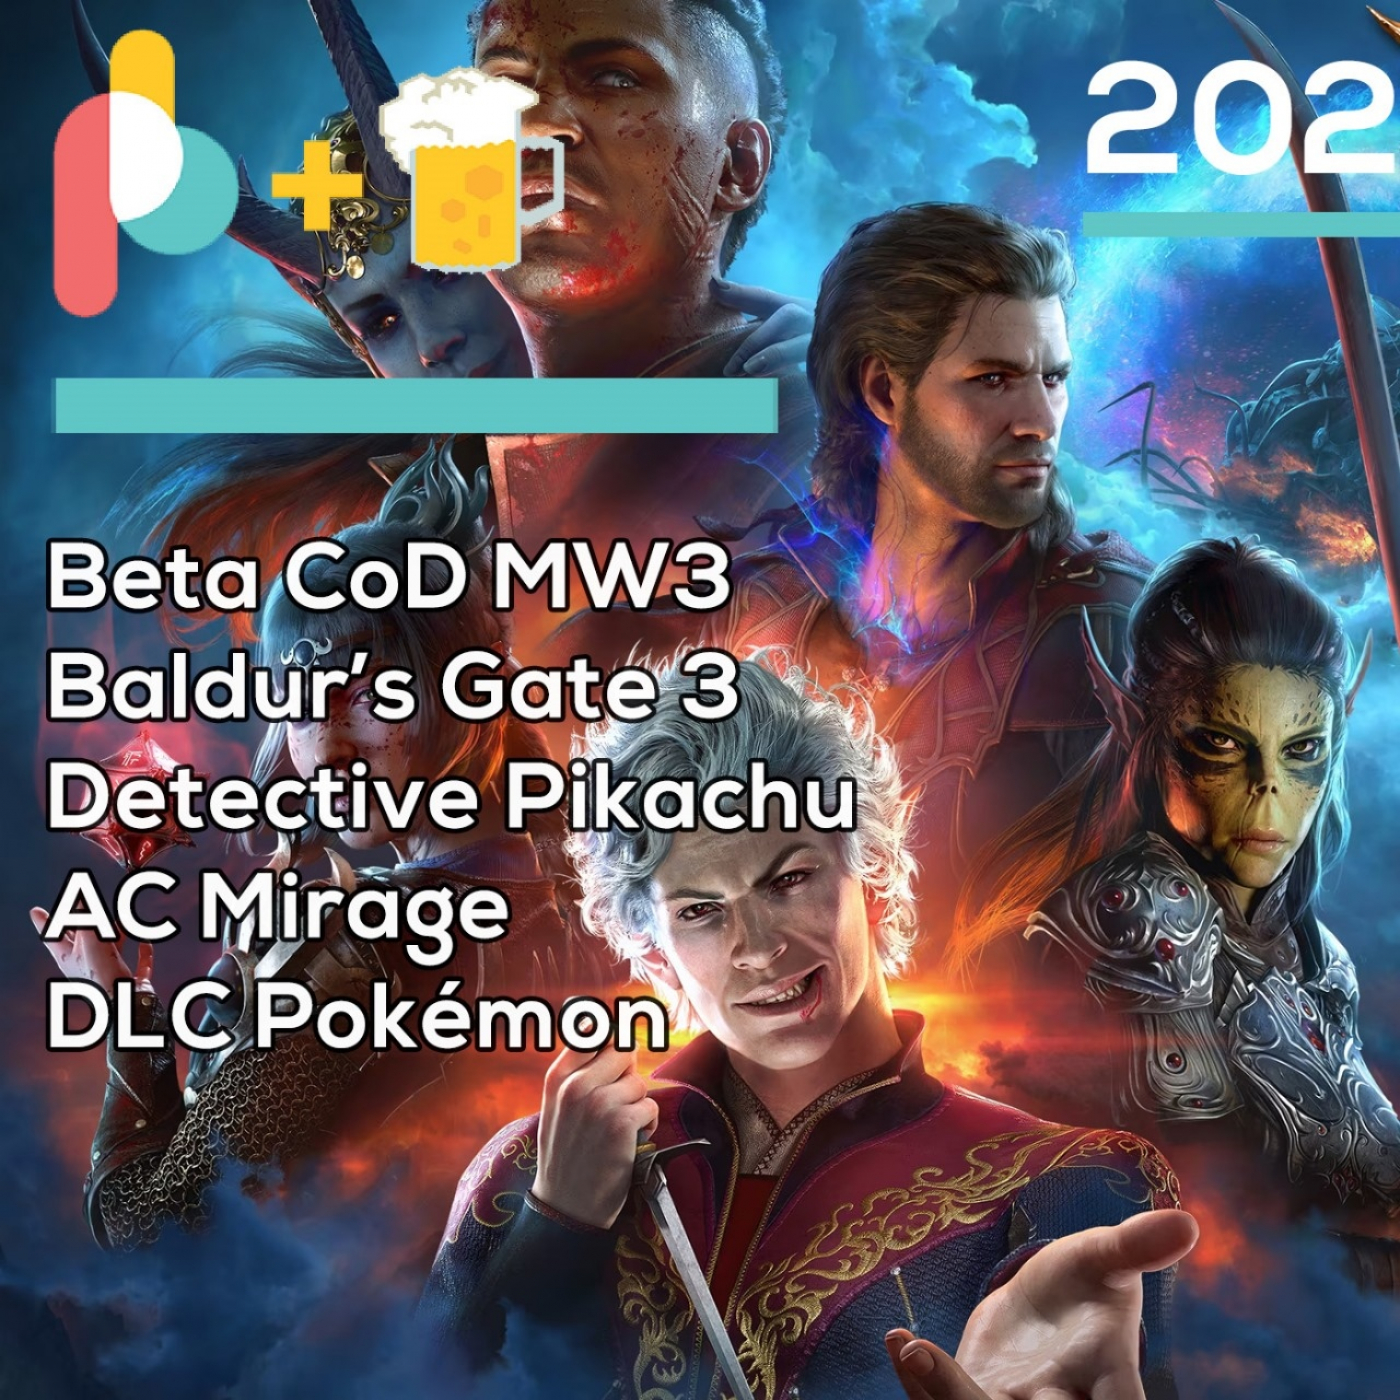 Pixelbits con cerveza 202: Amamos Baldur's Gate 3 y otros jueguitos